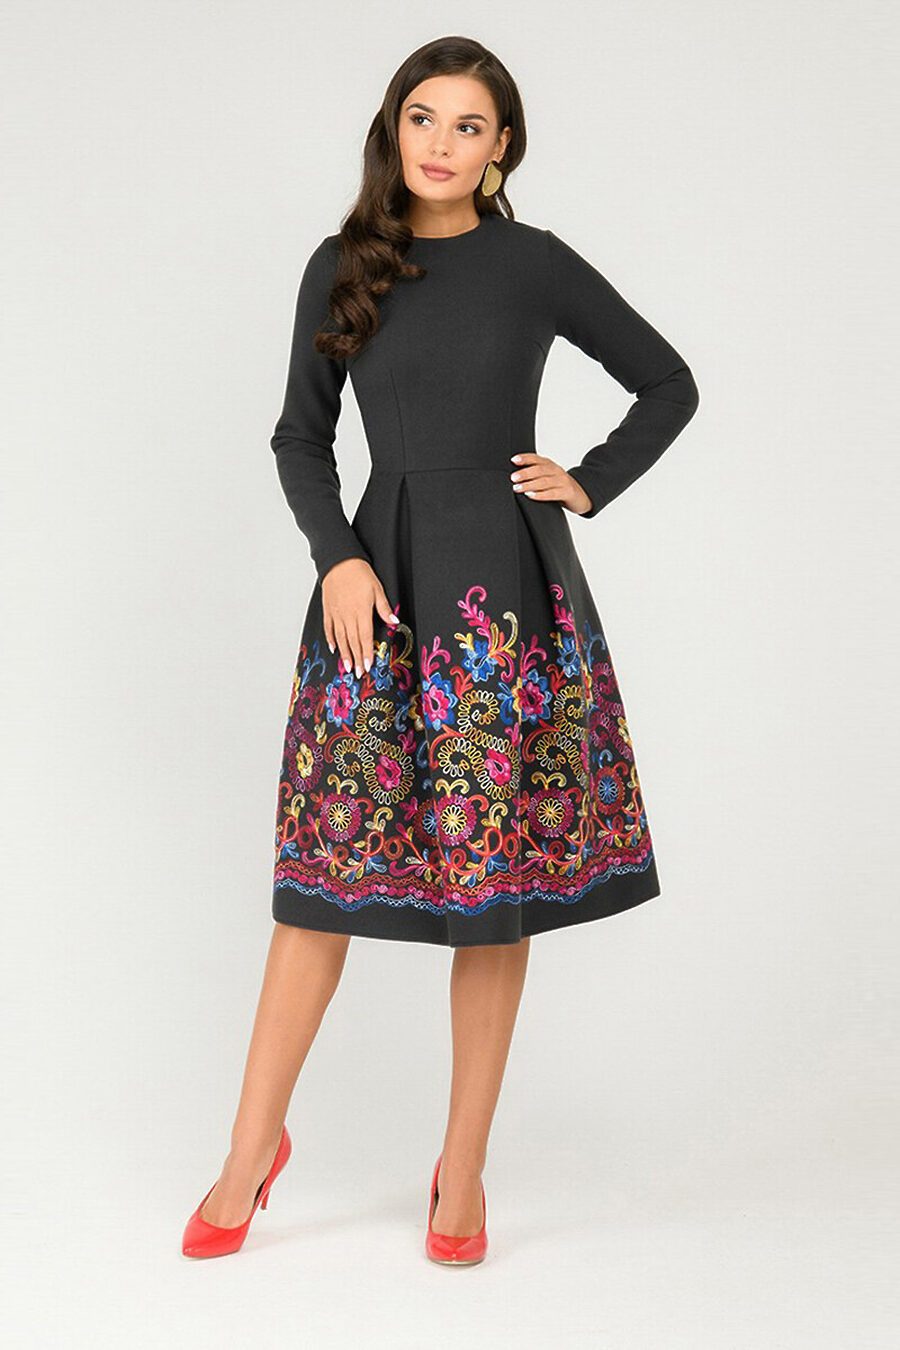 Платье для женщин 1001 DRESS 775857 купить оптом от производителя. Совместная покупка женской одежды в OptMoyo